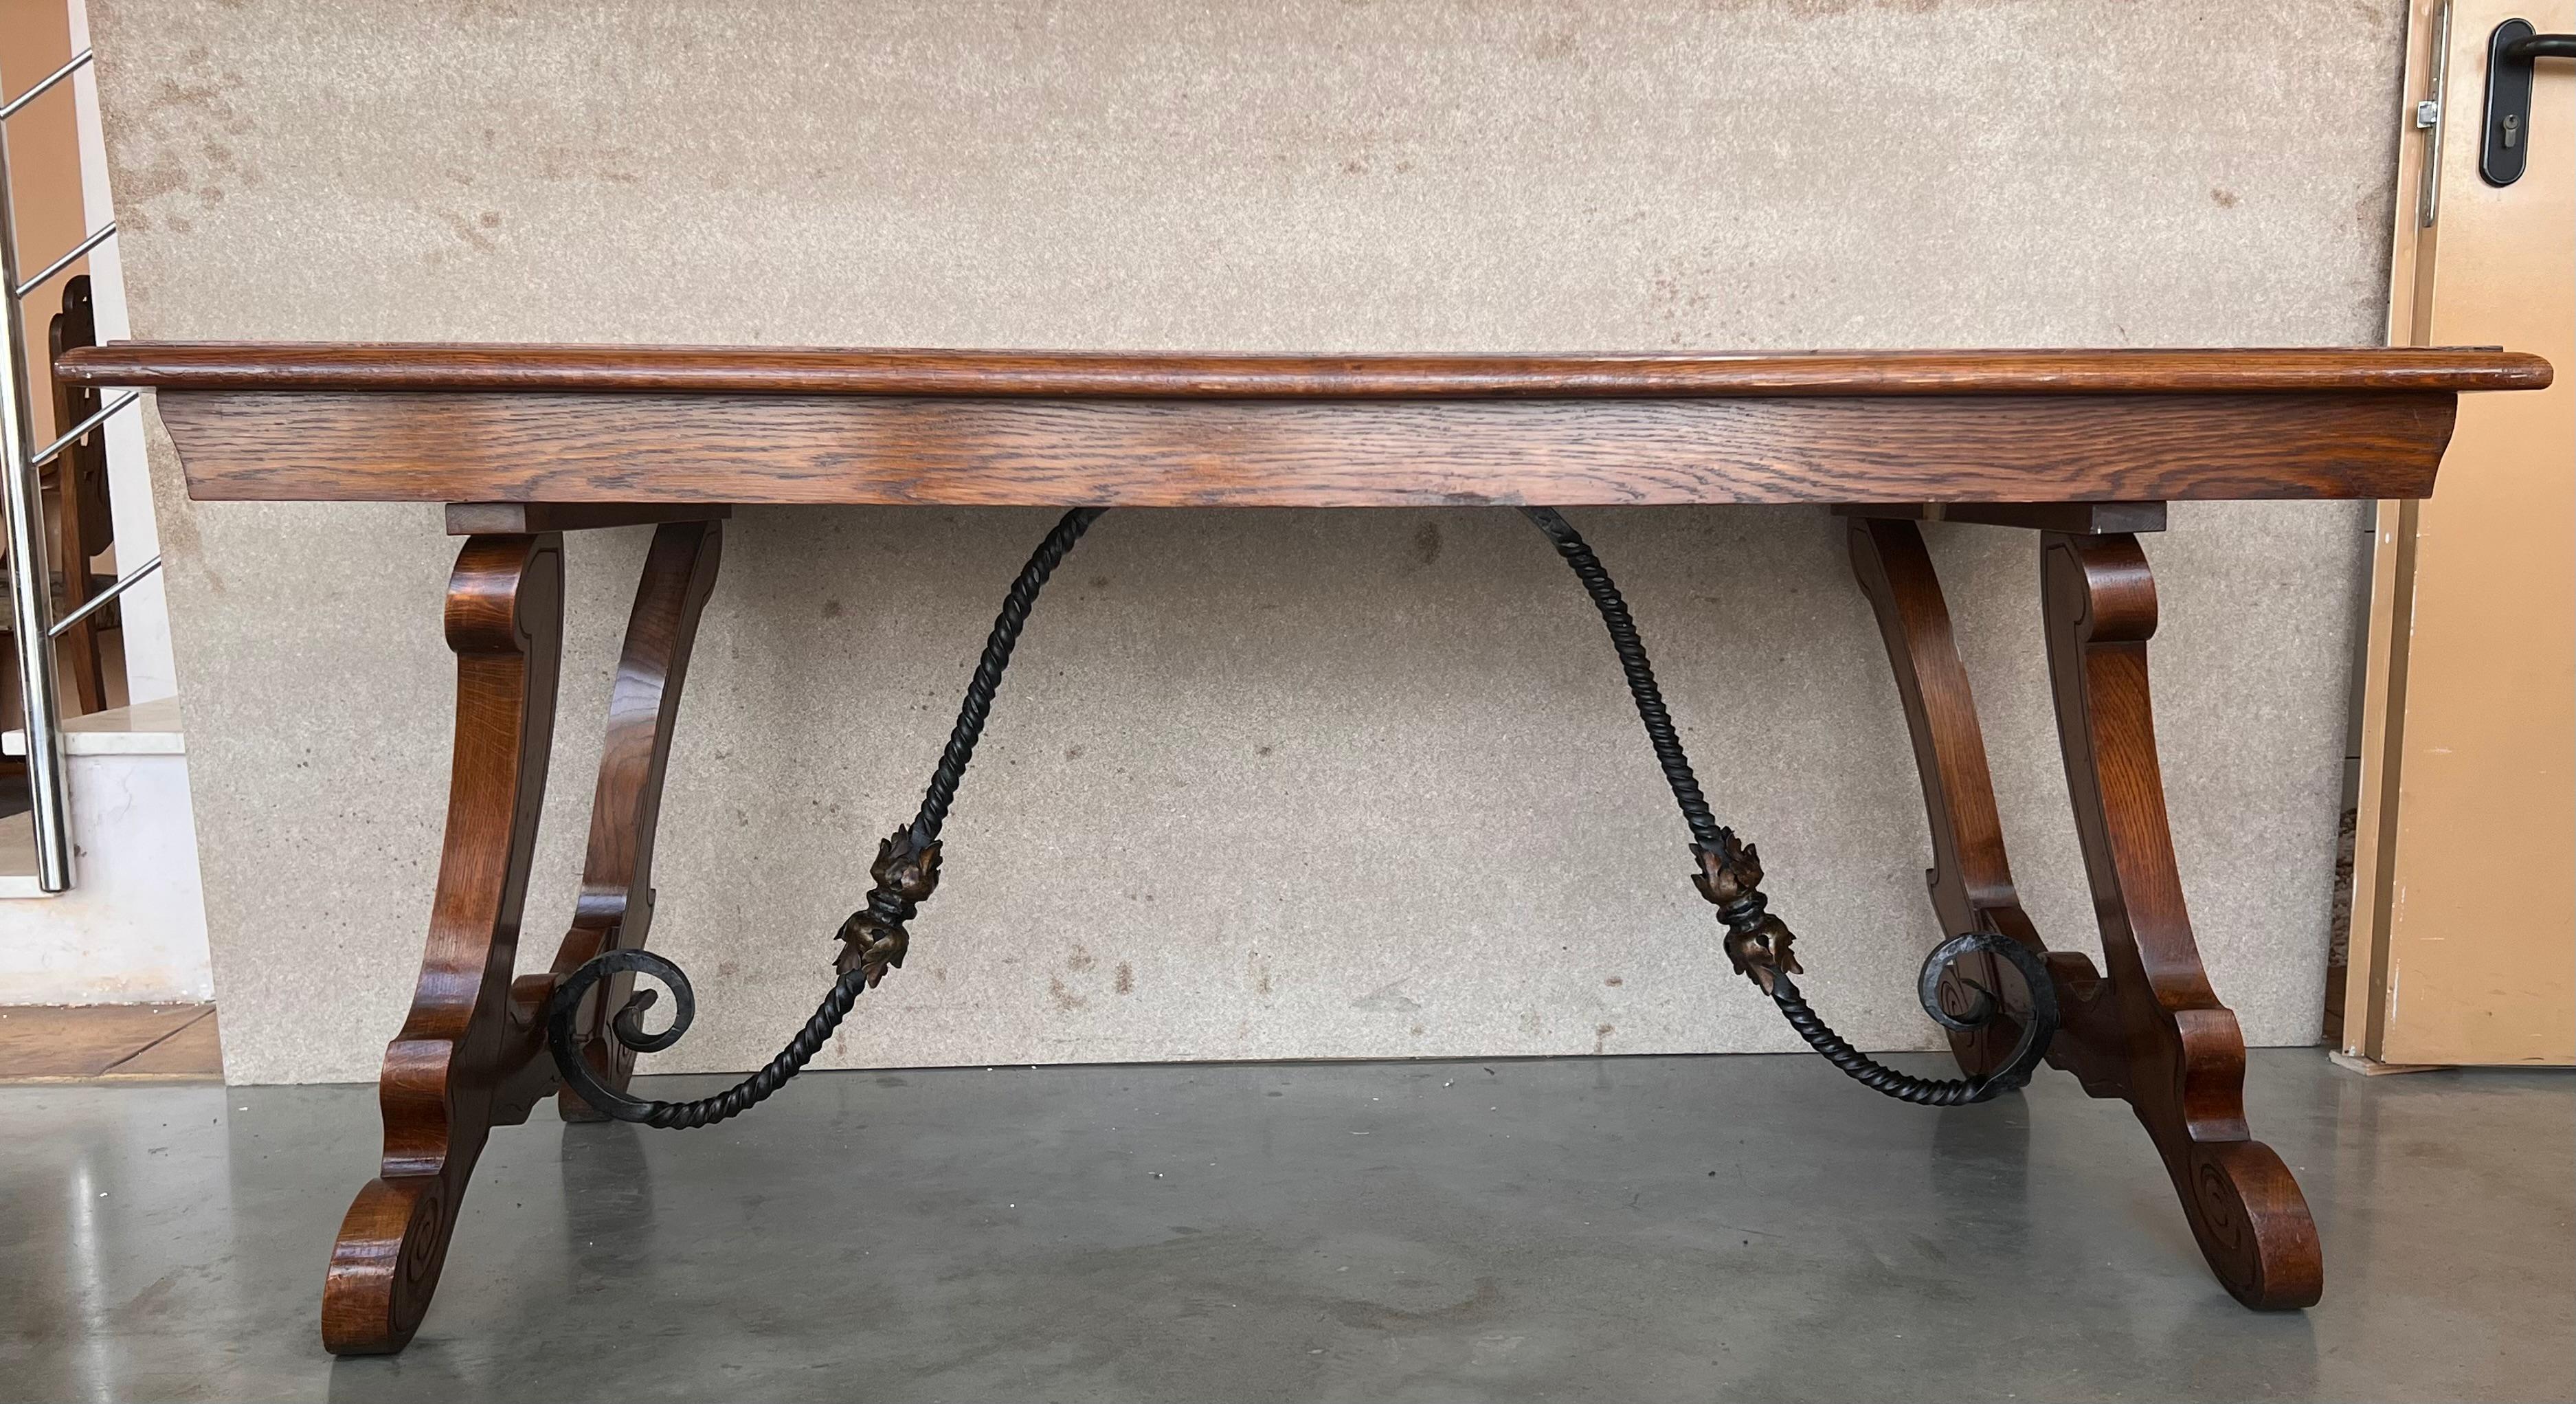 Ein monumentaler spanischer Tisch aus dem 20. Jahrhundert mit einer rechteckigen, gerahmten Platte aus massivem Nussbaumholz, die auf handgeschnitzten, klassischen Lyra-Beinen ruht, die durch schöne Eisentragen verbunden sind.

Dieser Tisch wurde